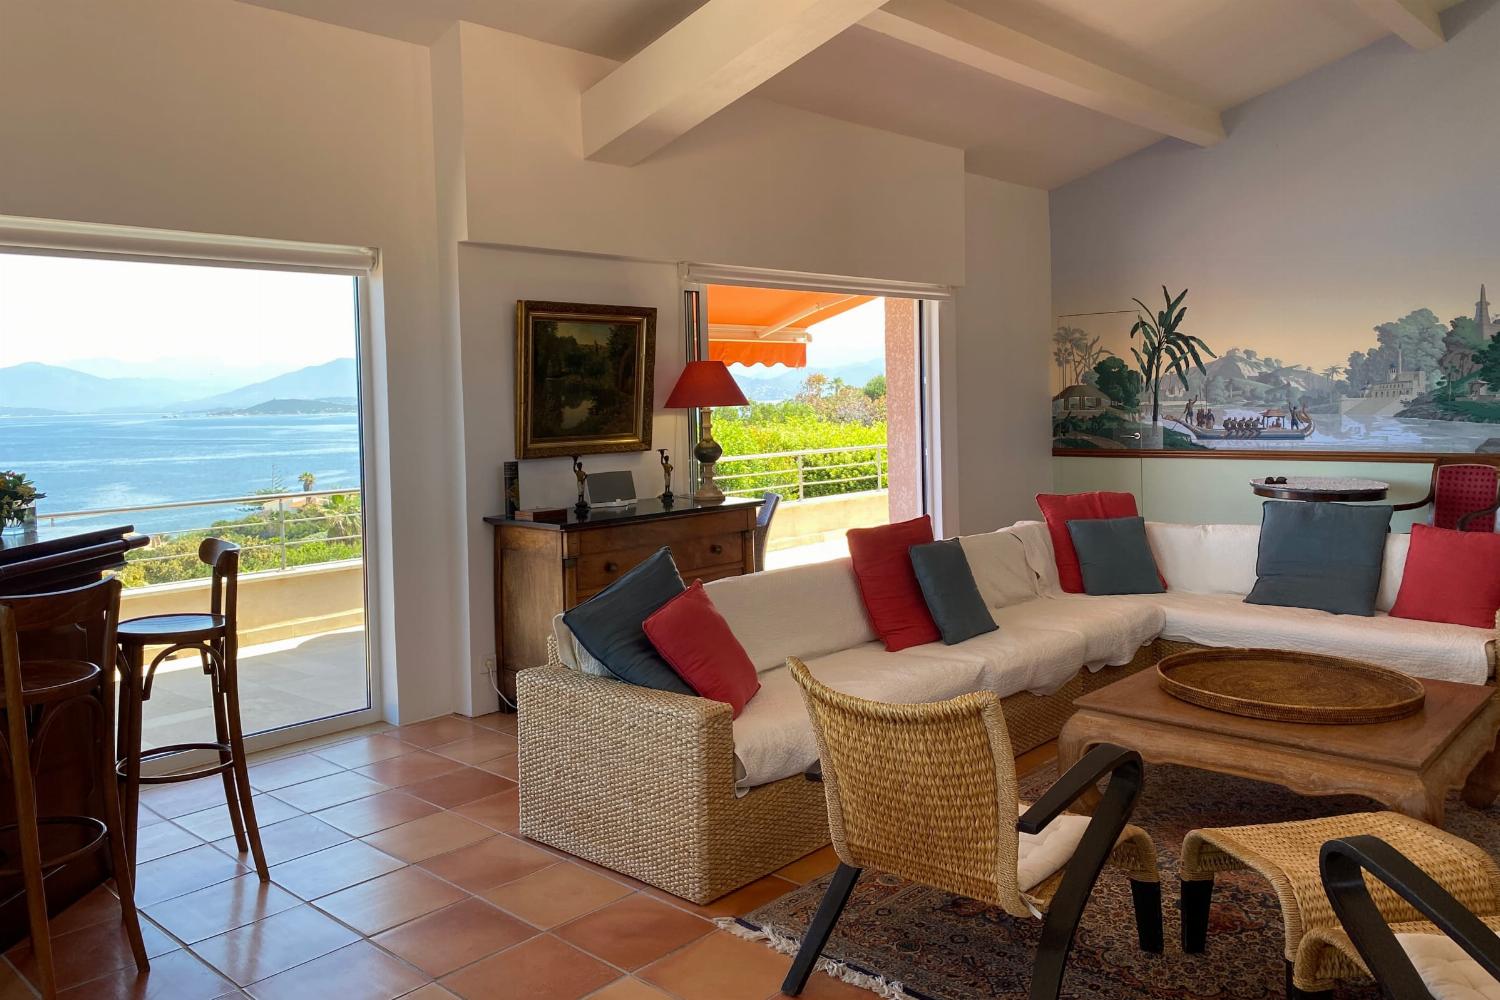 Salon | Villa de vacances en Corse